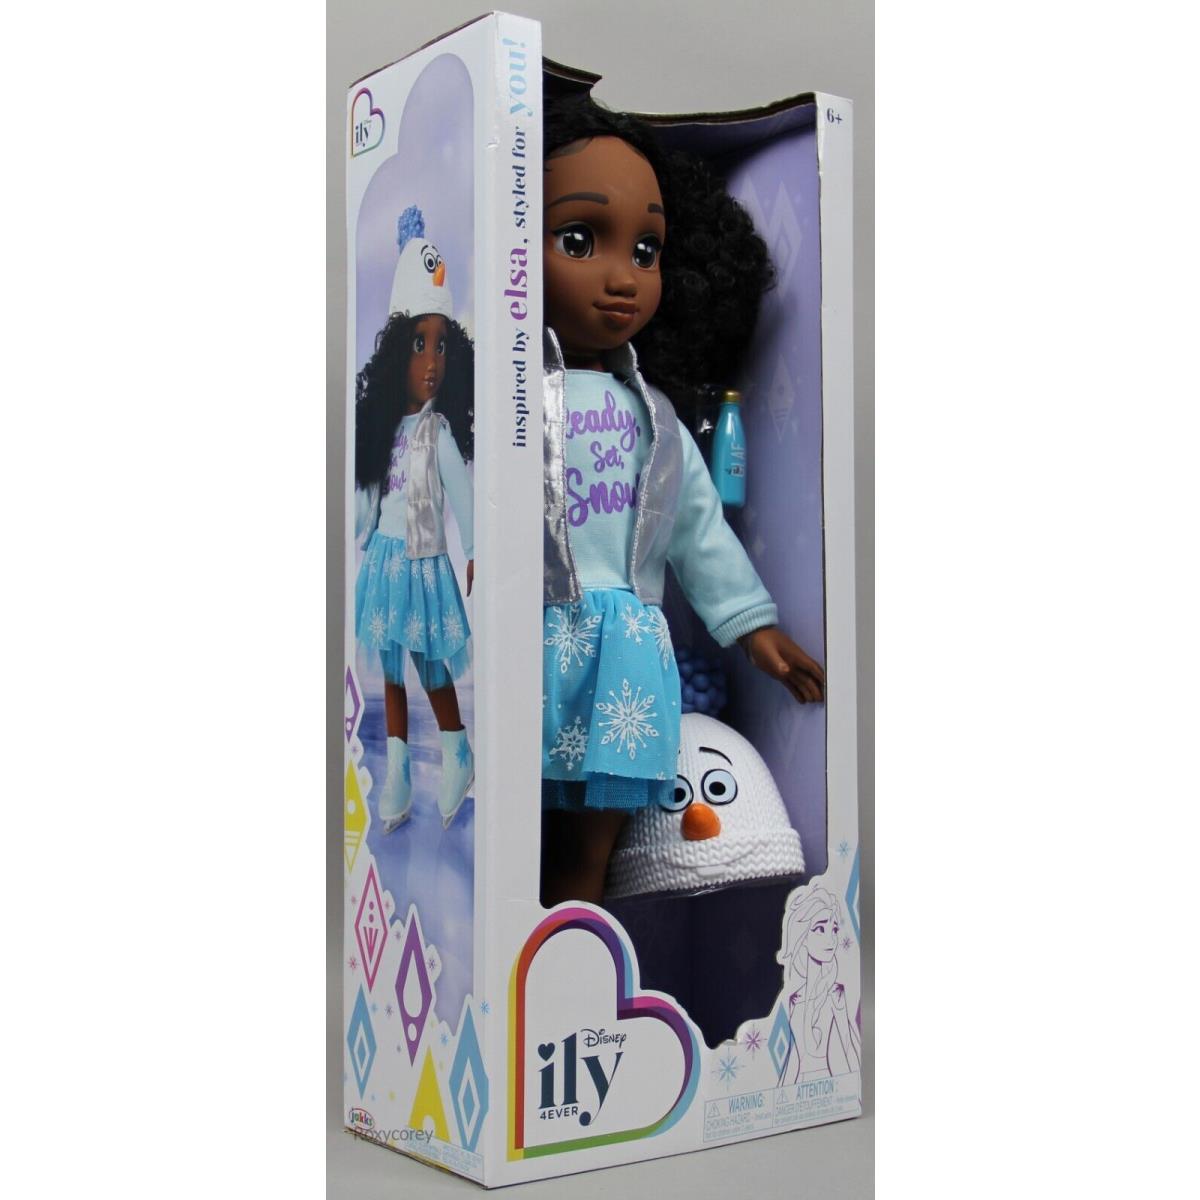 Disney Ily 4ever 18 Brunette Frozen Elsa Inspired Fashion Doll